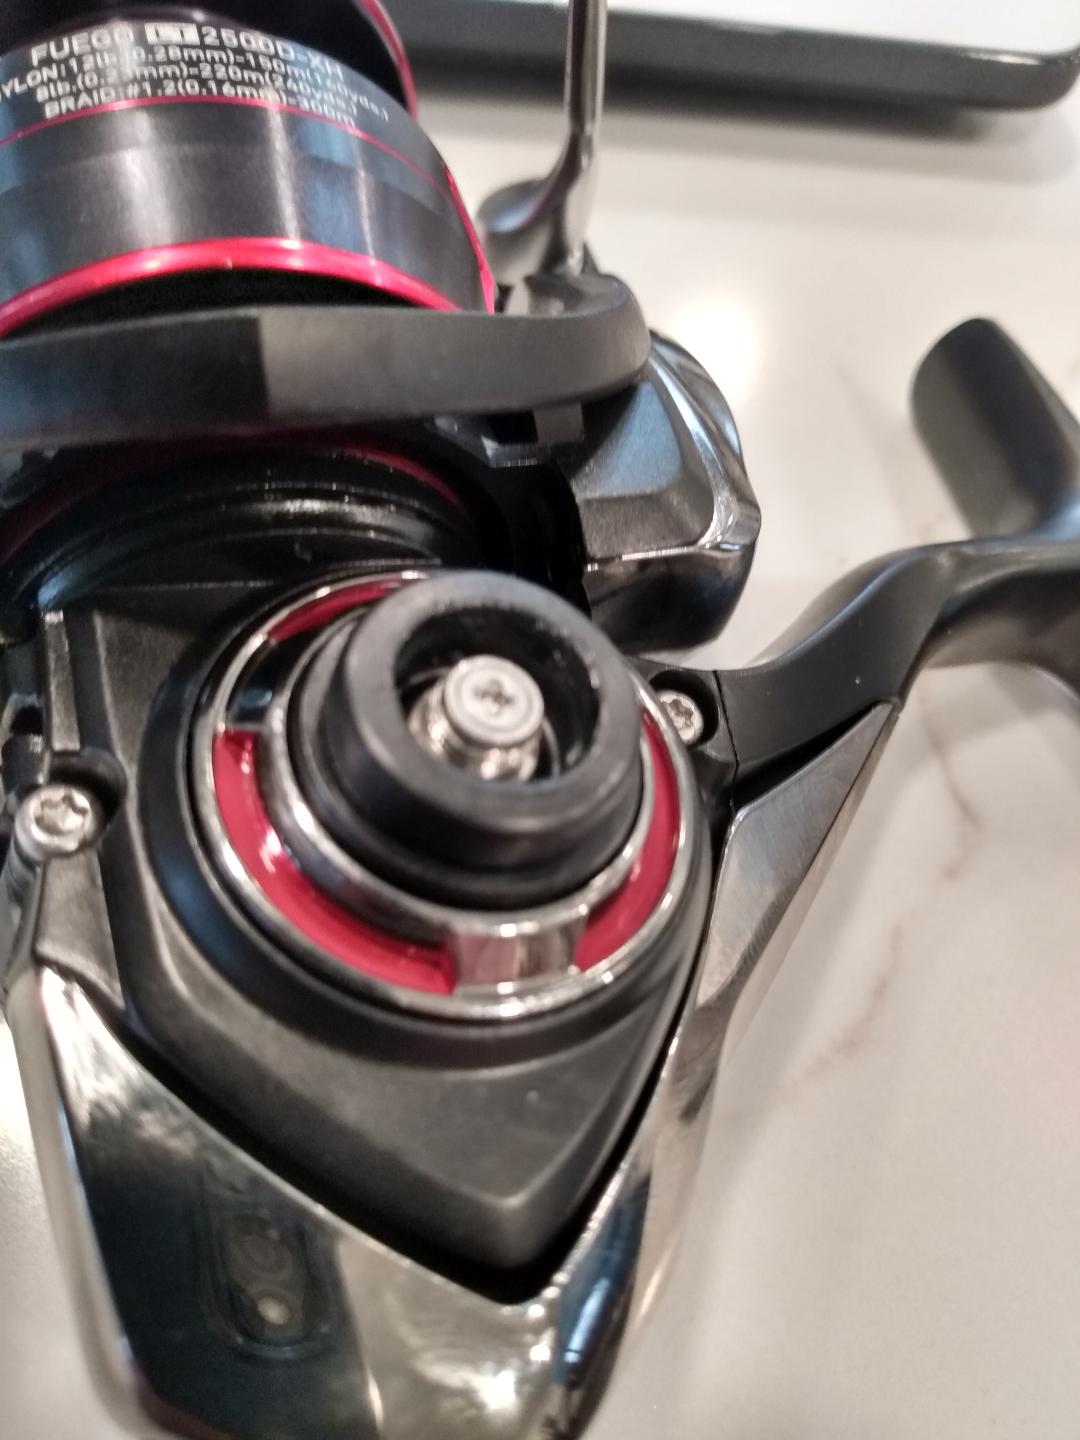 Spinning reel handle screw in too far? - Fishing Rods, Reels, Line